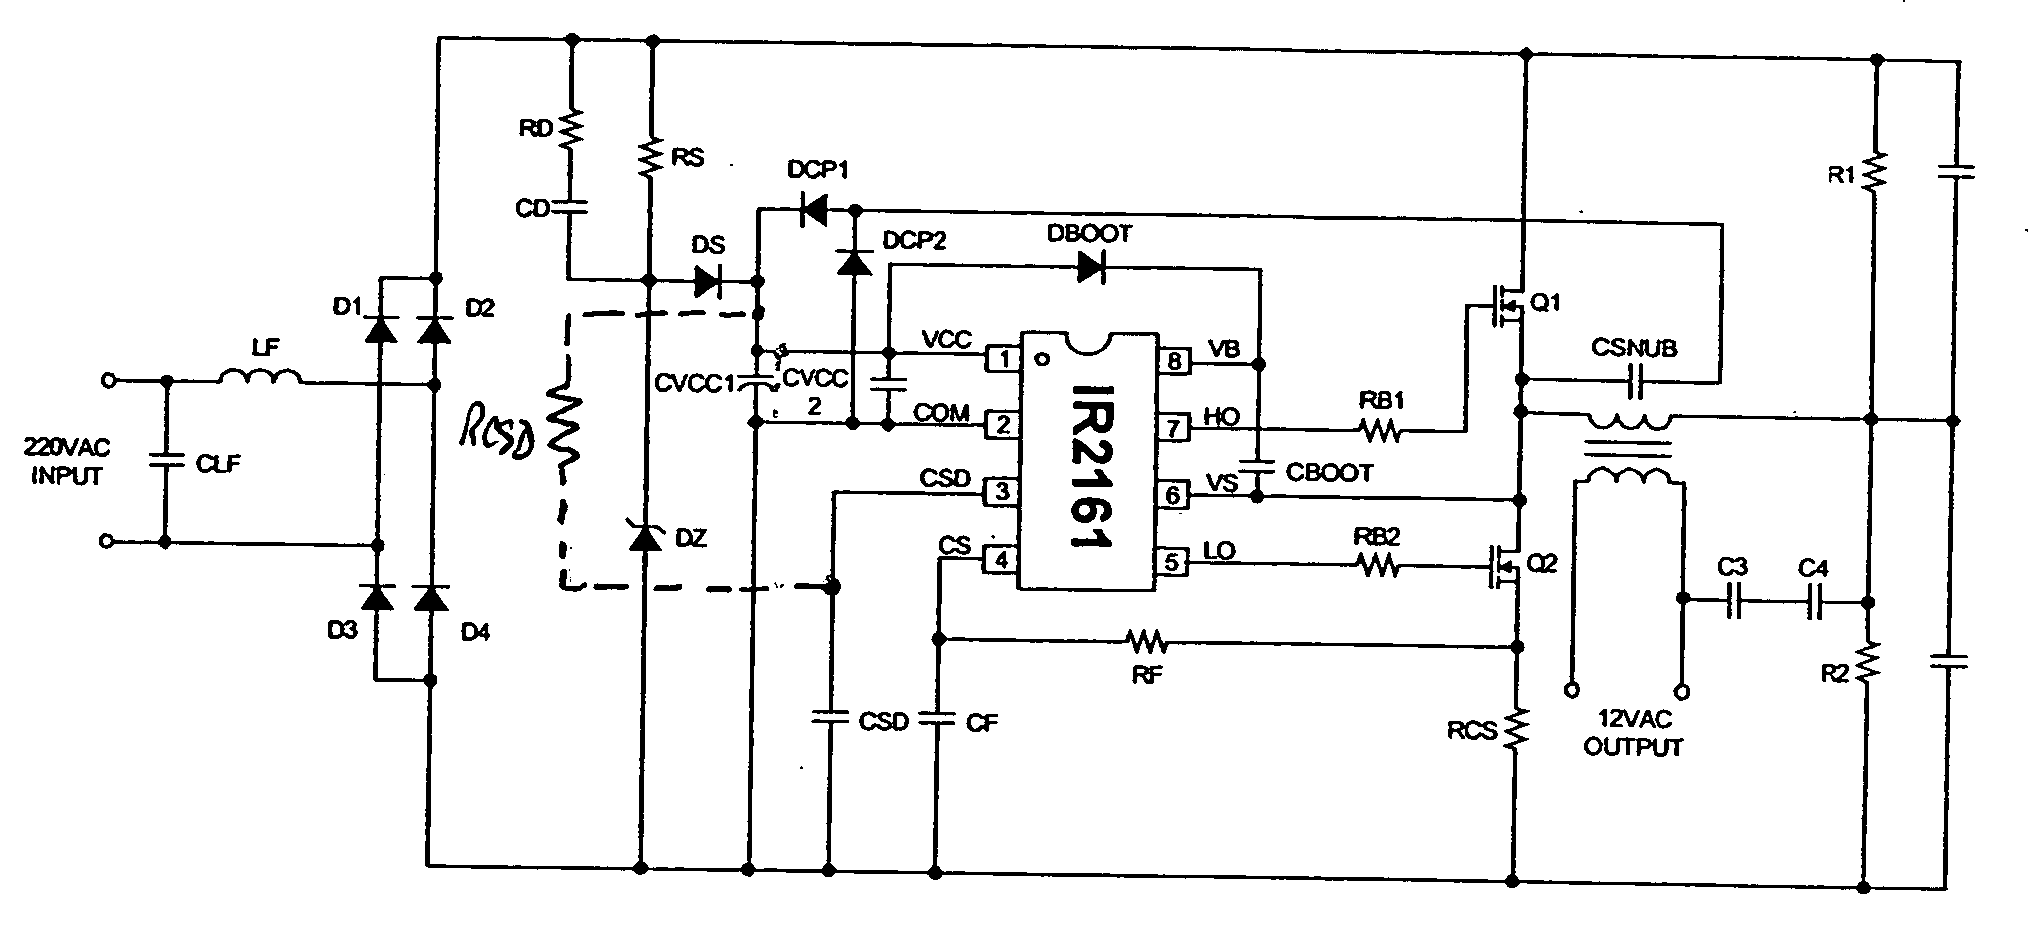 Applications of halogen convertor control IC